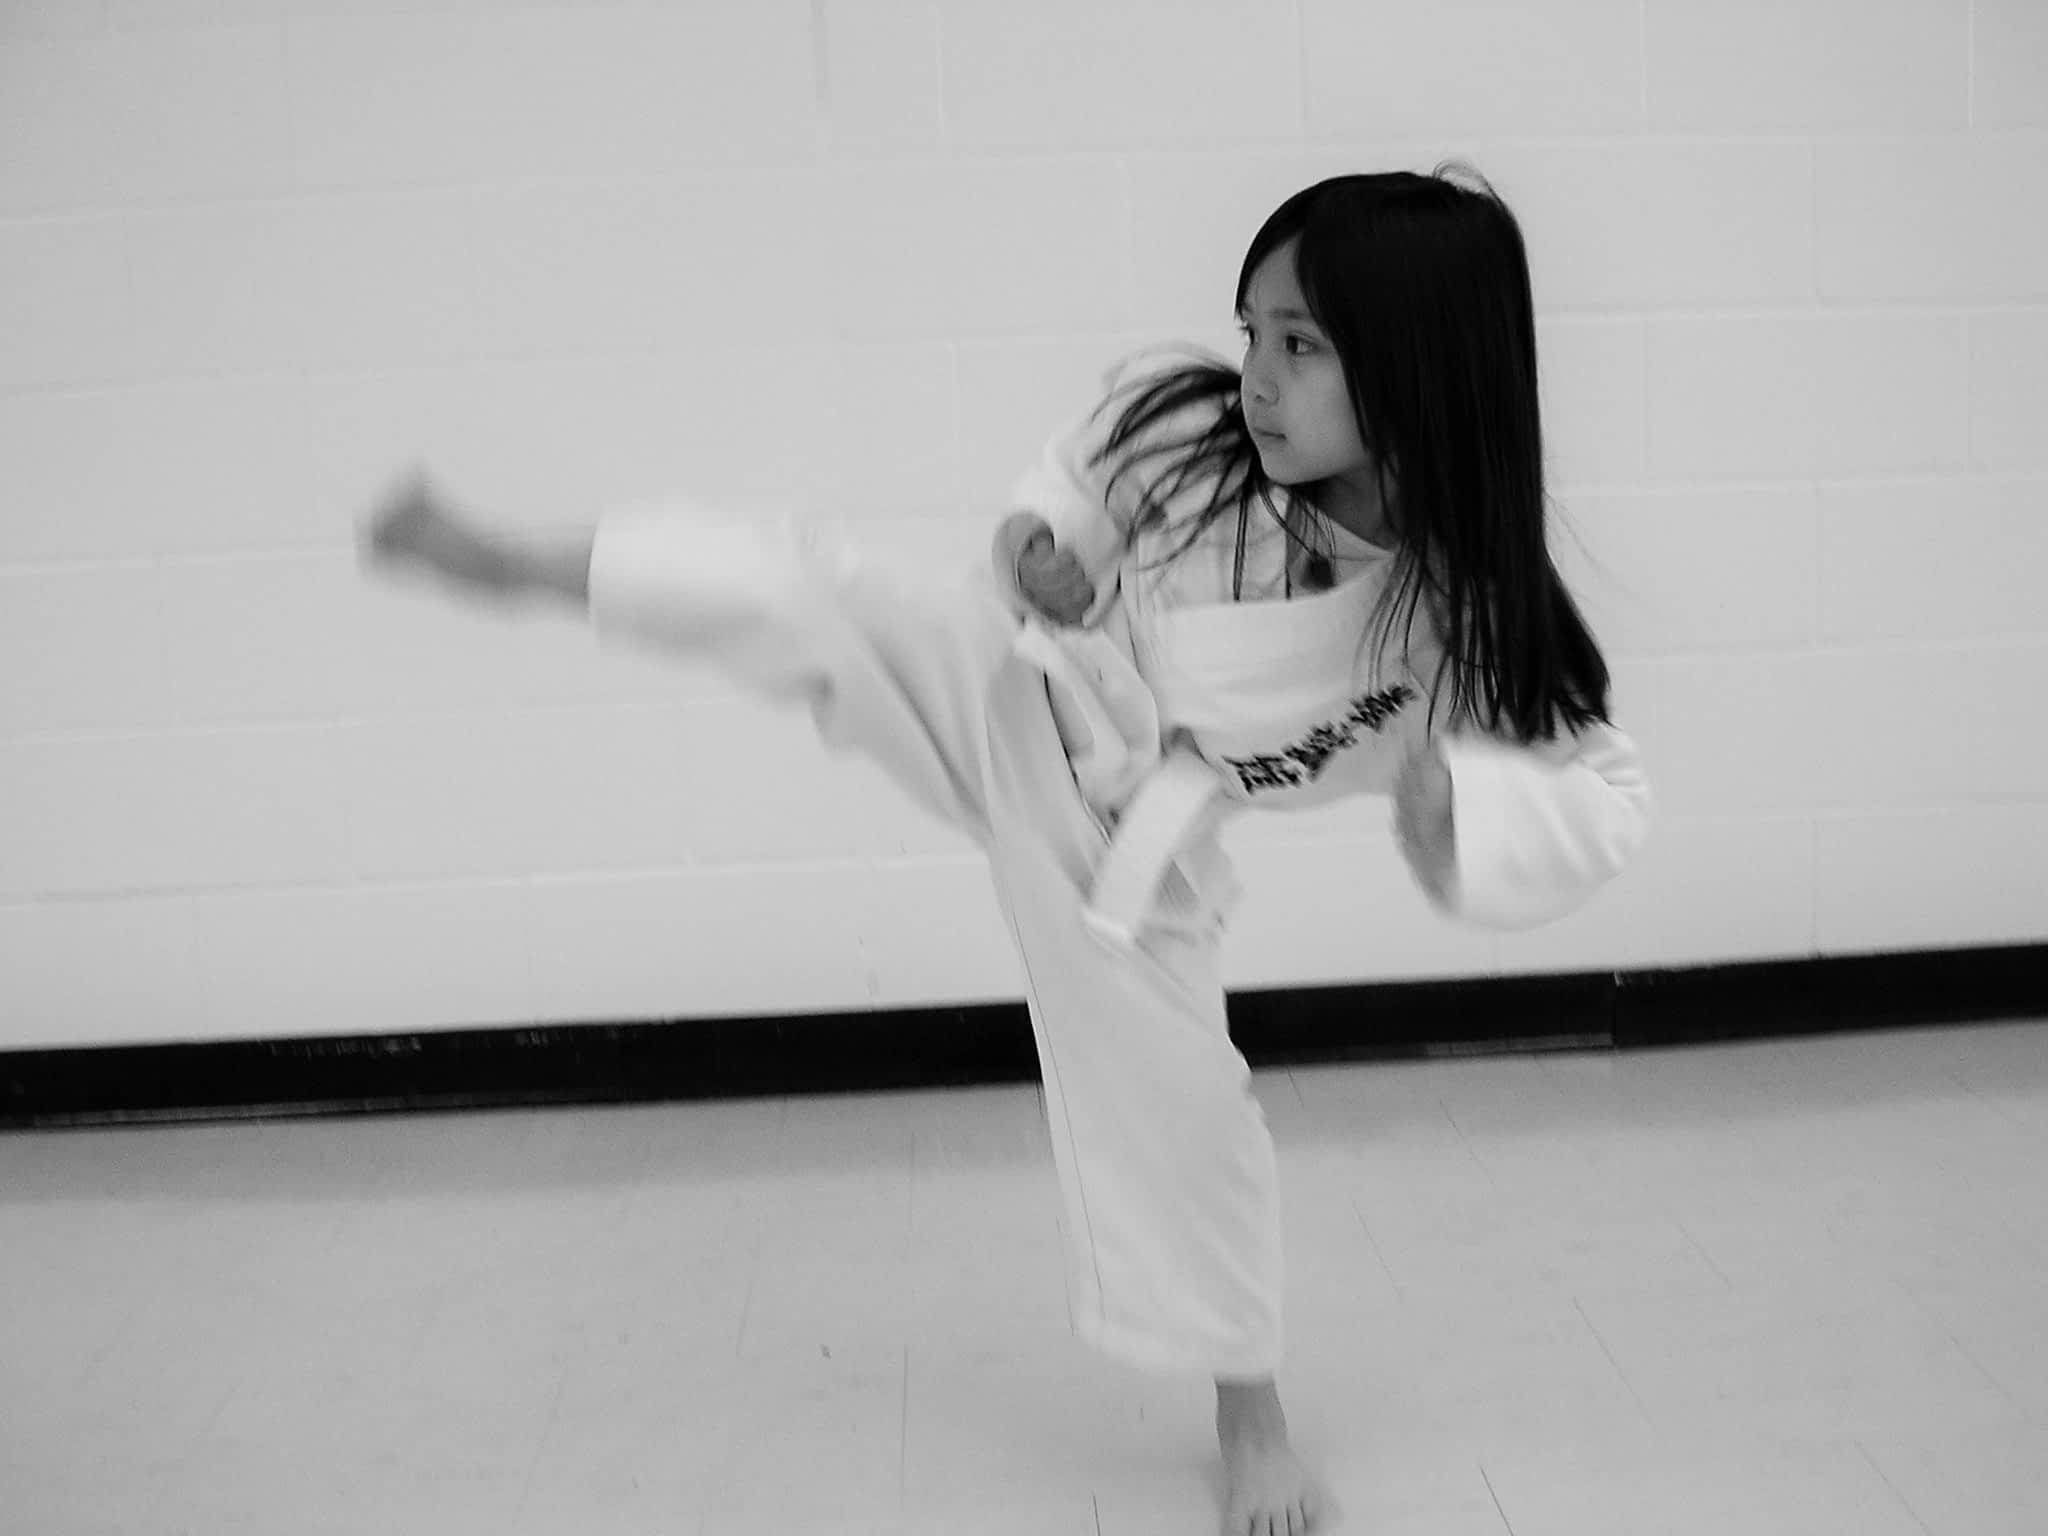 photo Japan Karate Do Kenseikan Canada